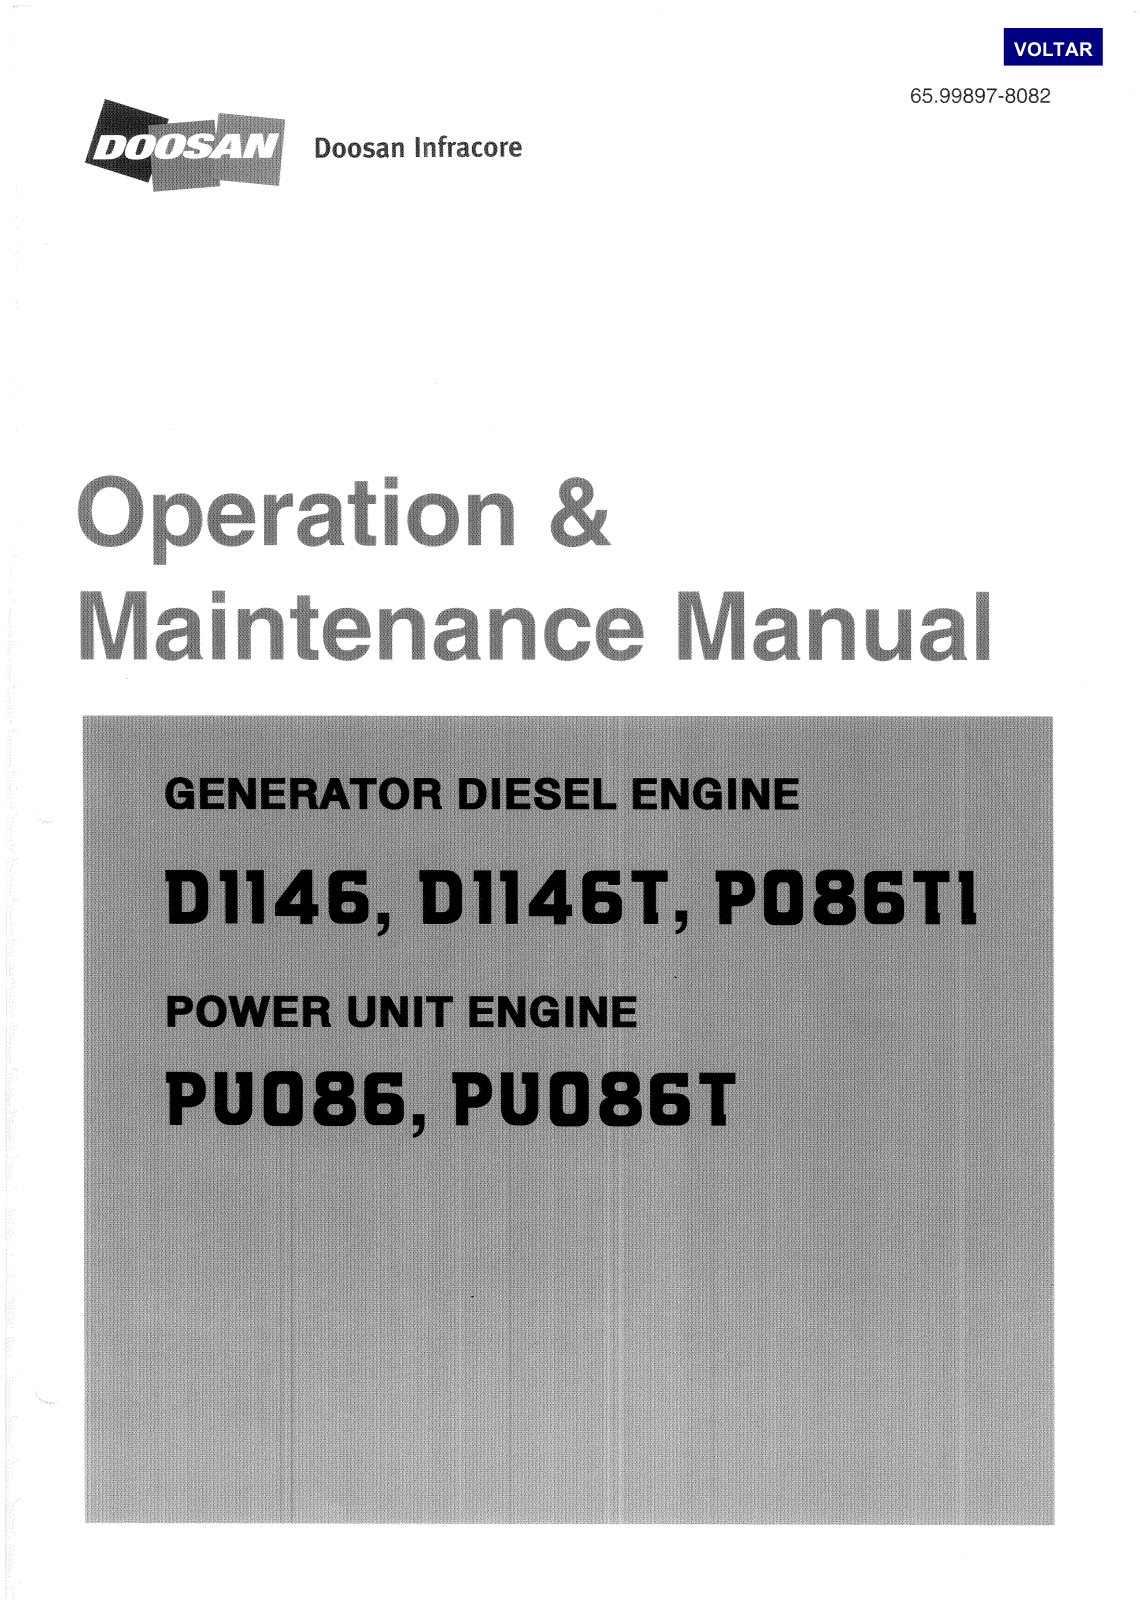 Doosan D1146, D1146T, Po86TL Maintenance Manua